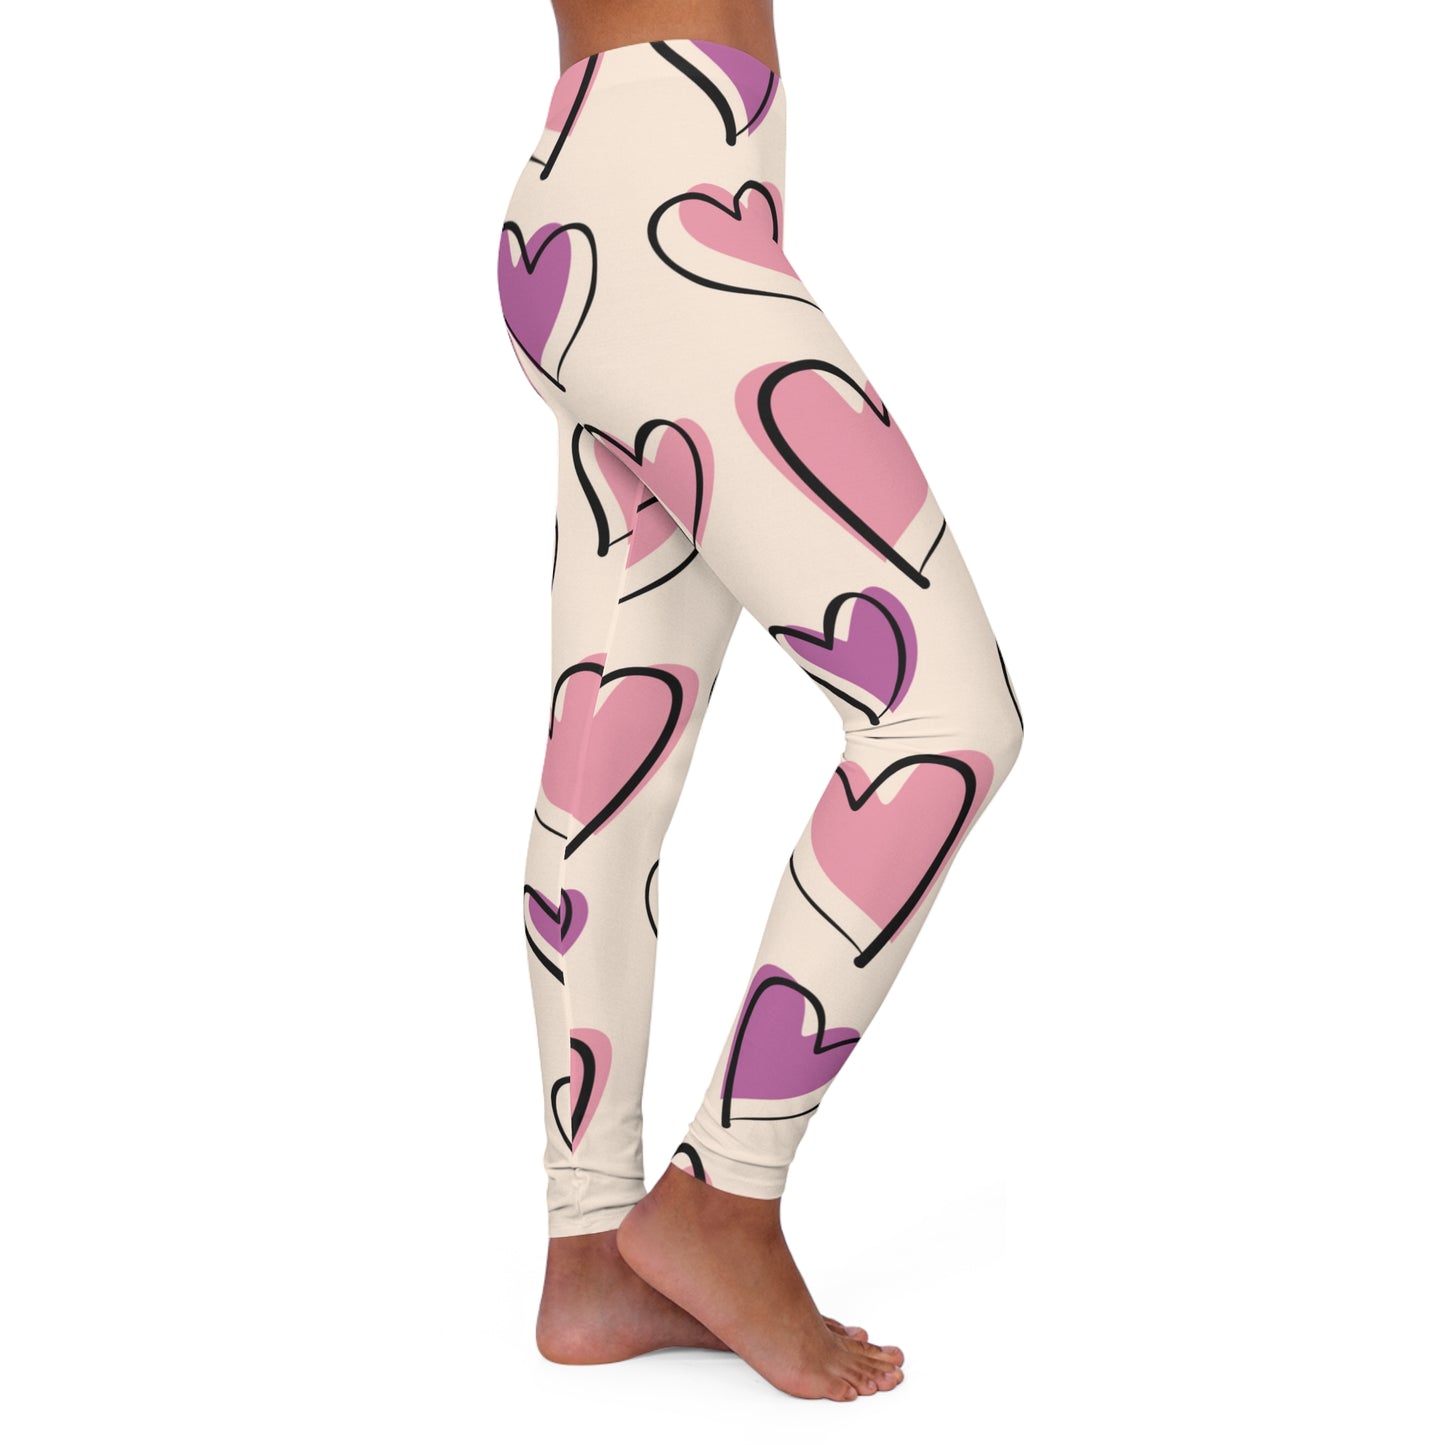 Lavender & Pink Heart Outline Leggings: Express Love in Subtle Elegance